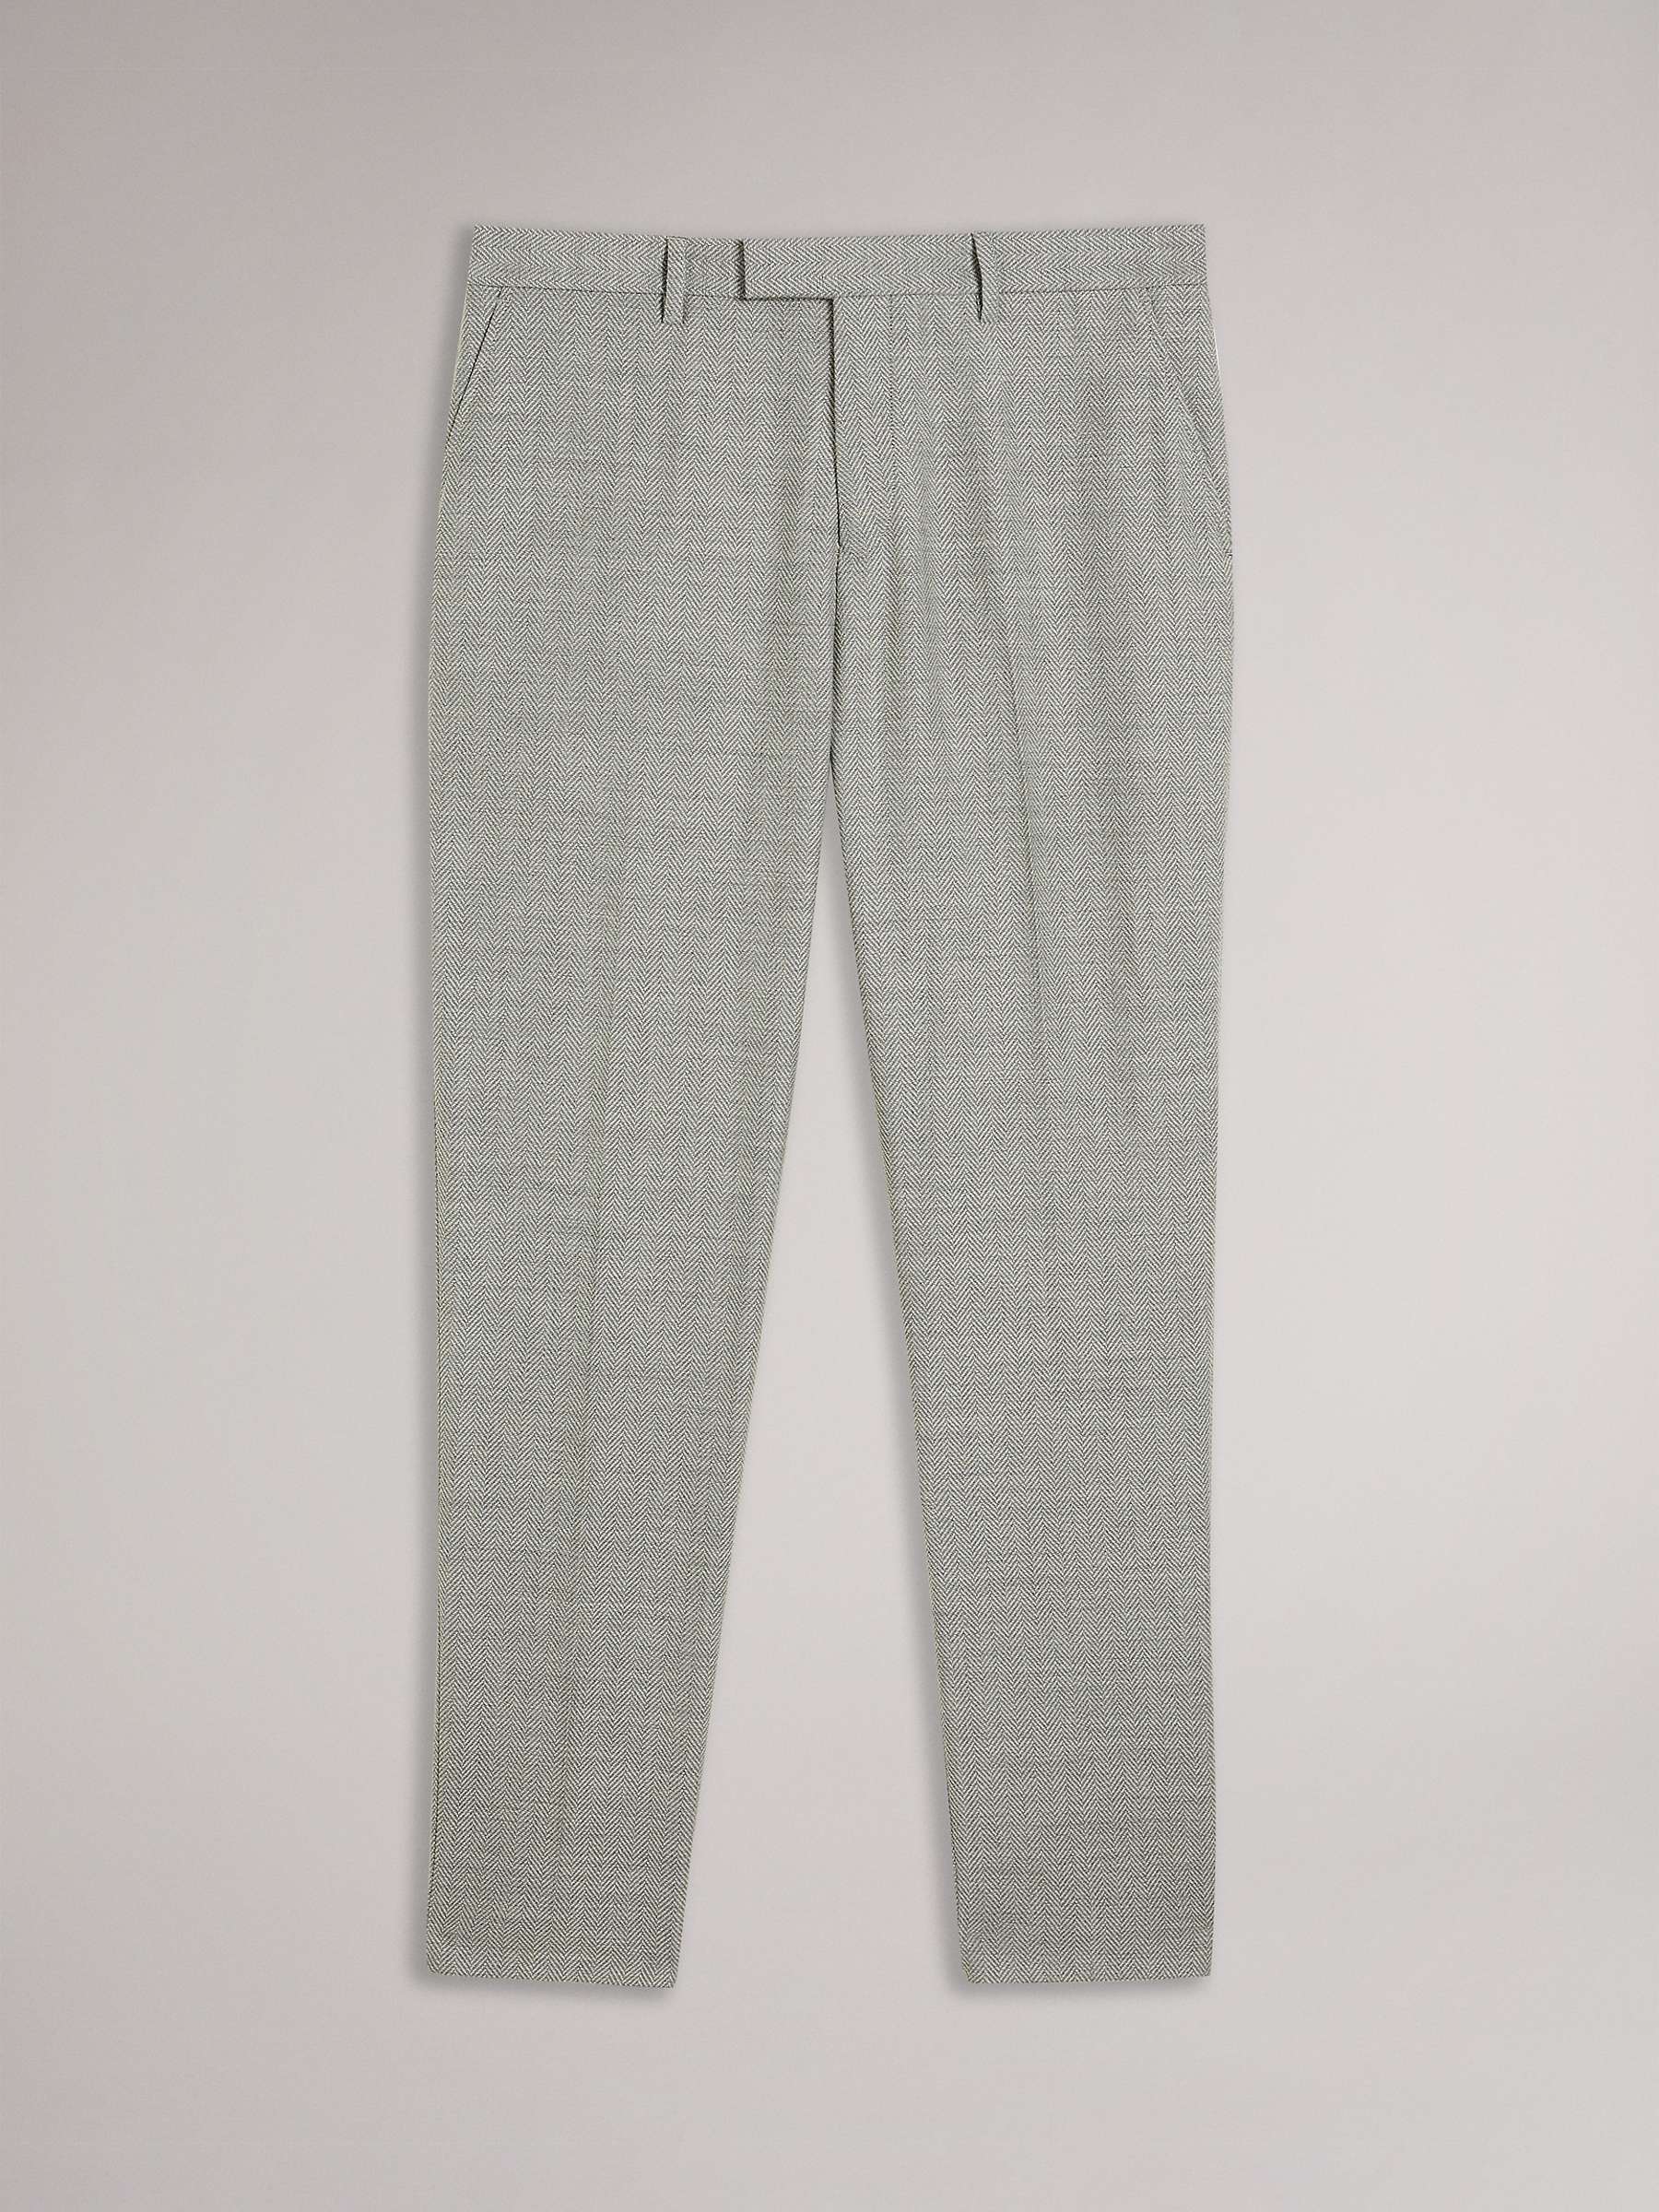 Buy Ted Baker Slim Fit Herringbone Trousers, Grey Online at johnlewis.com